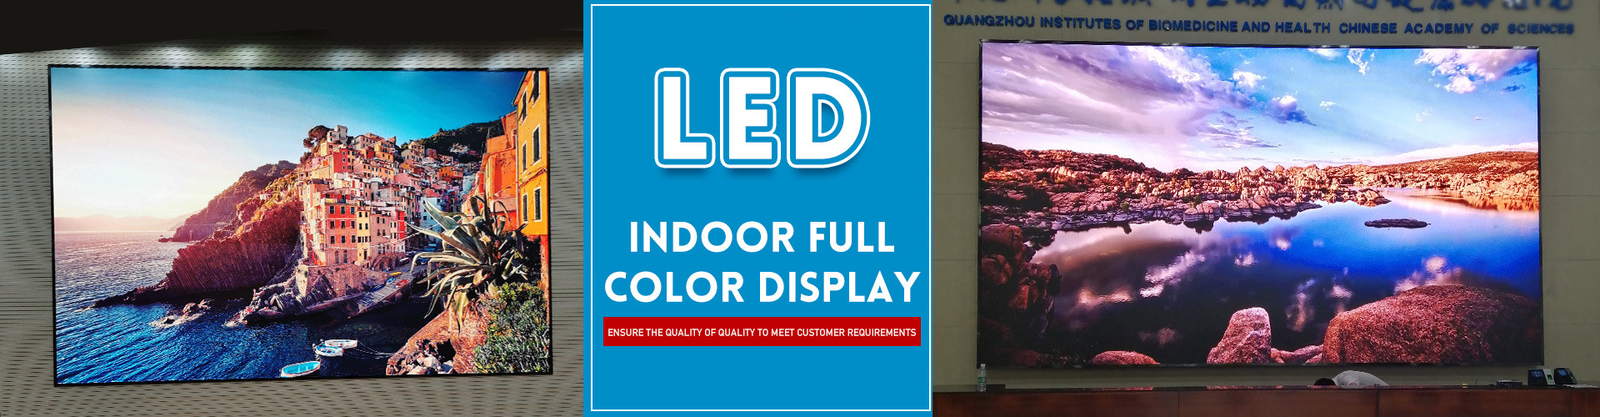 Vollfarbige LED-Anzeige für den Innenbereich